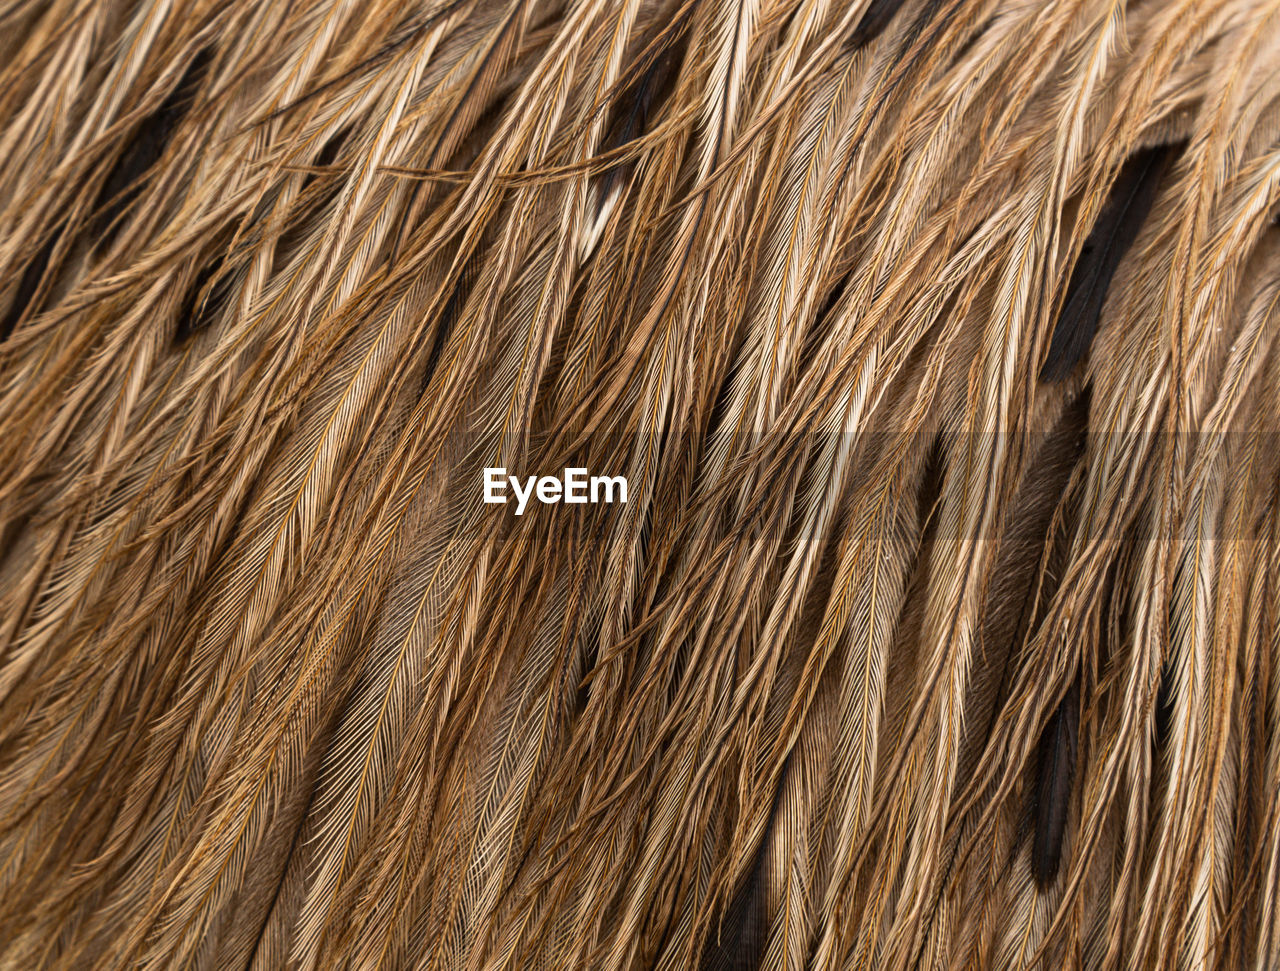 Emu bird feather up close